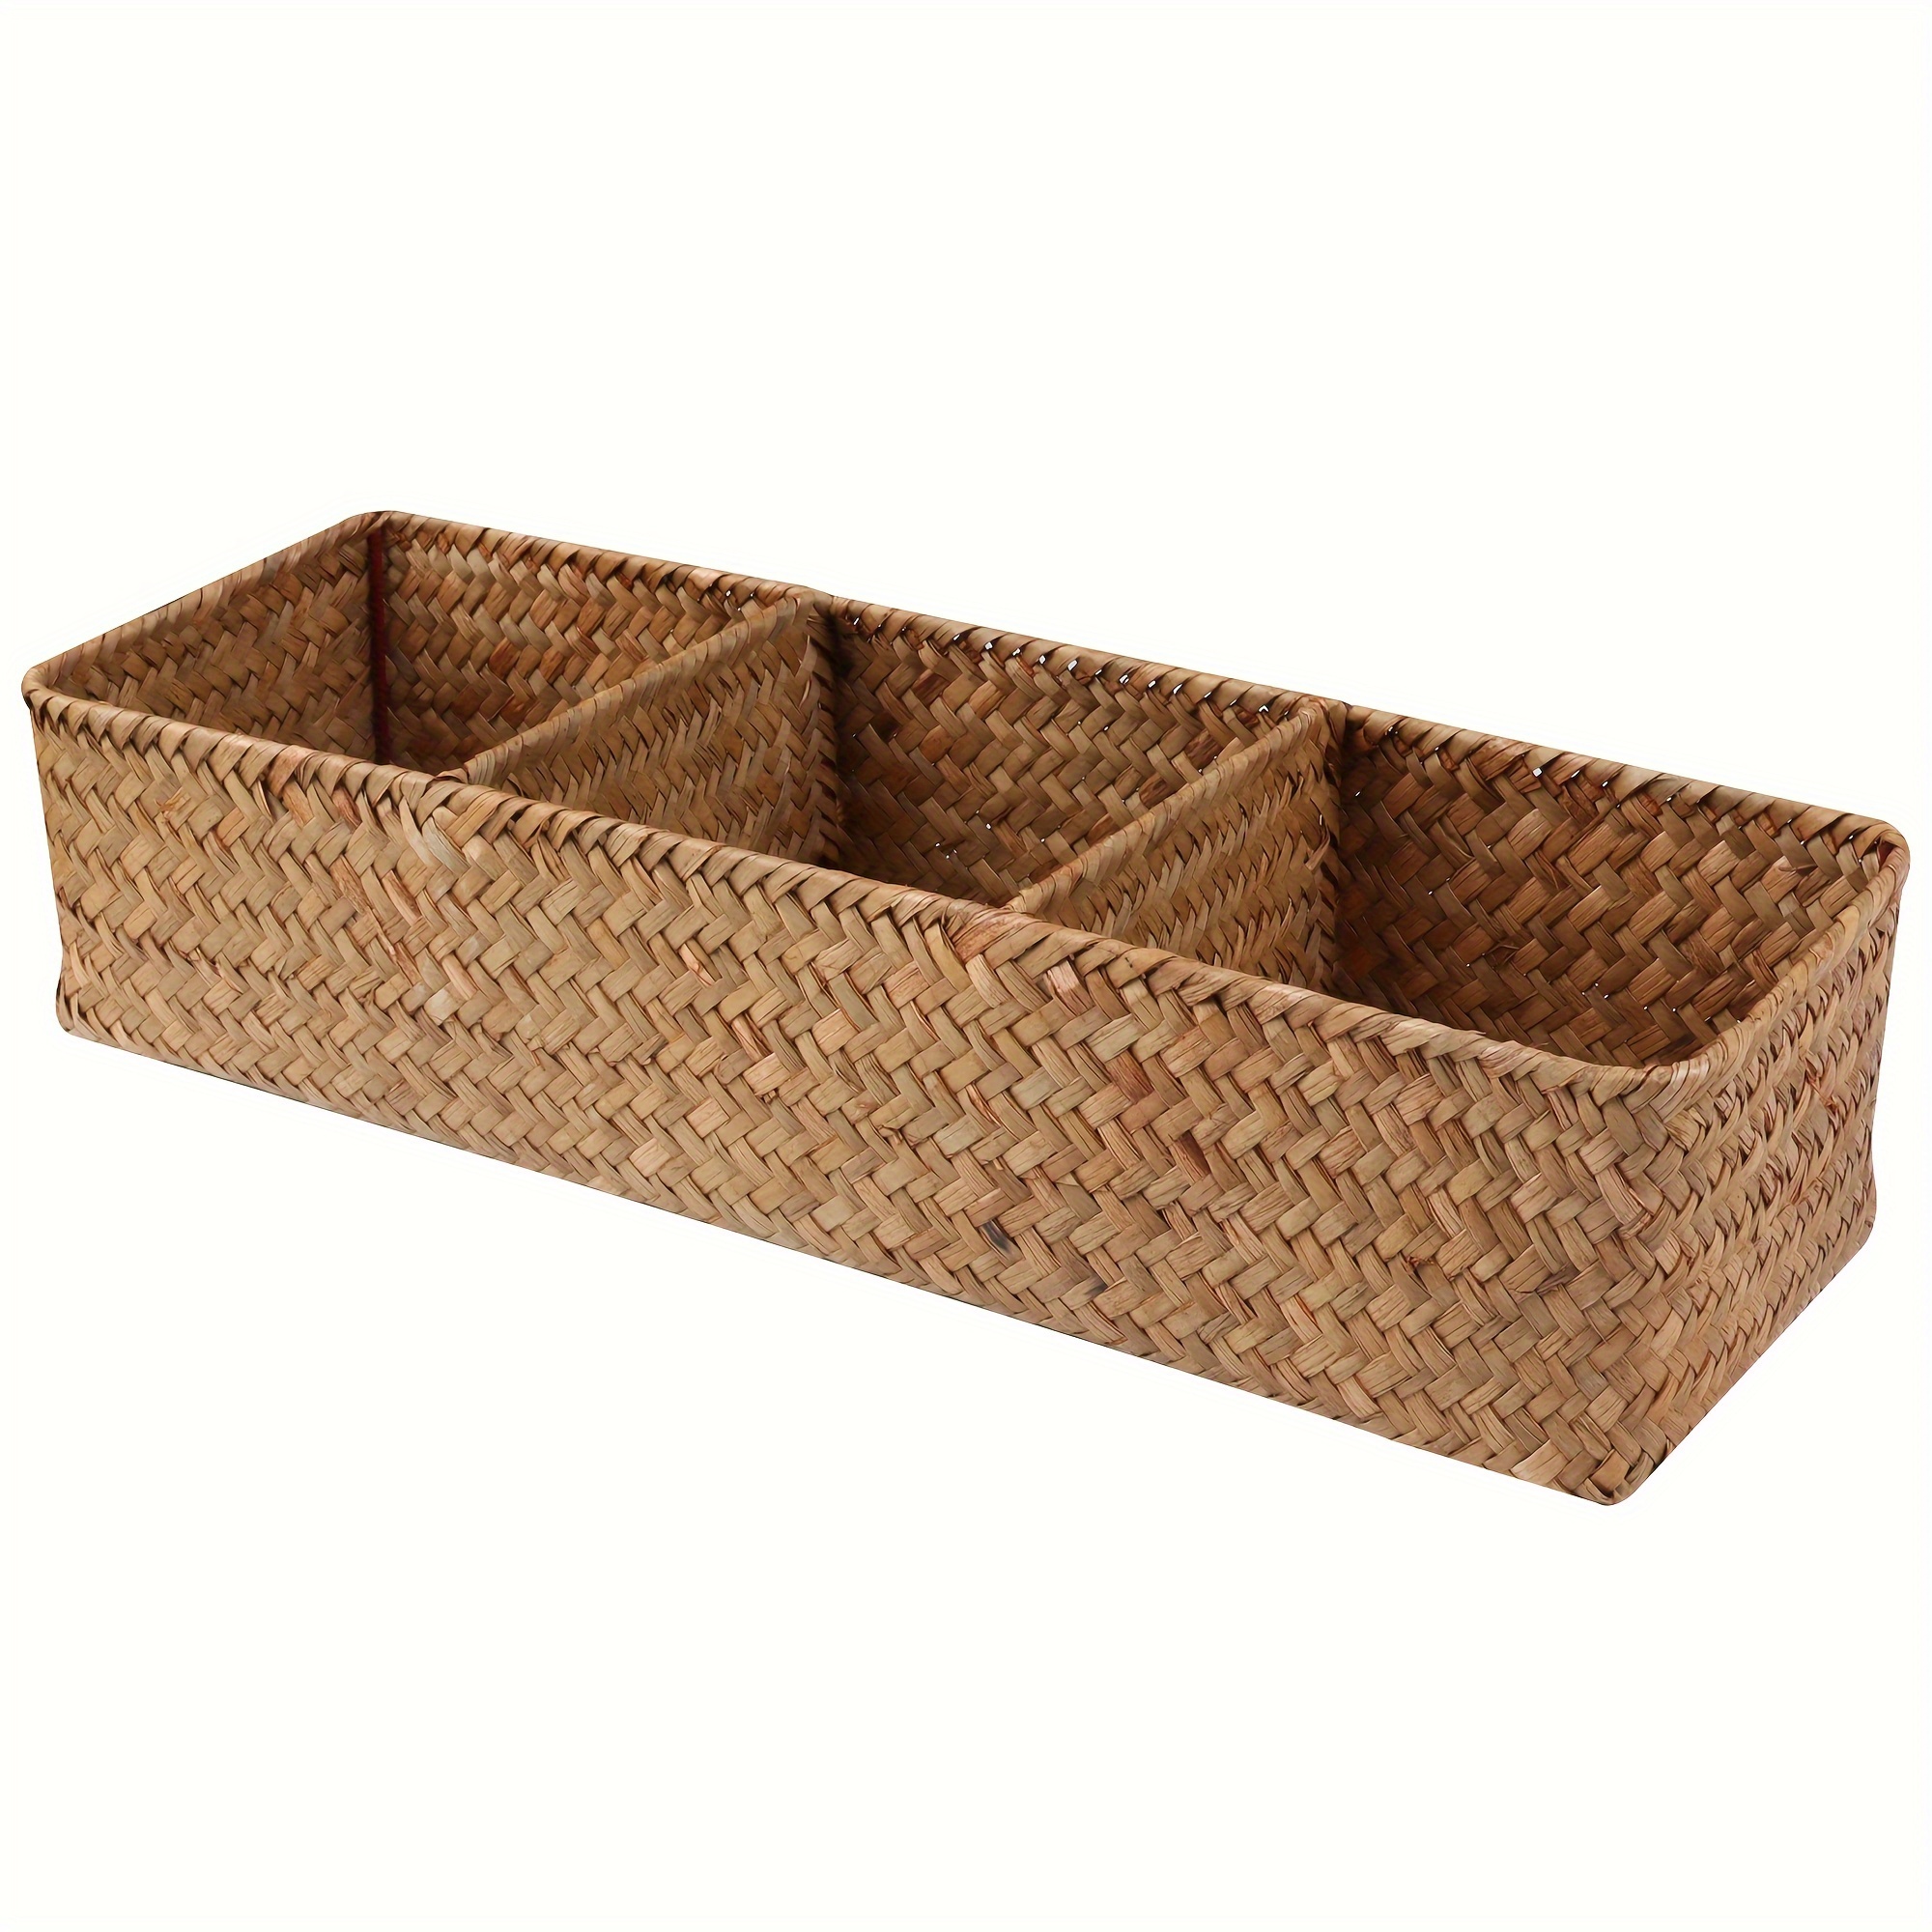 Cesta de mimbre grande rectangular con asas de madera para estantes, cesta  de jacinto de agua, cestas naturales para organizar, cestas de mimbre para